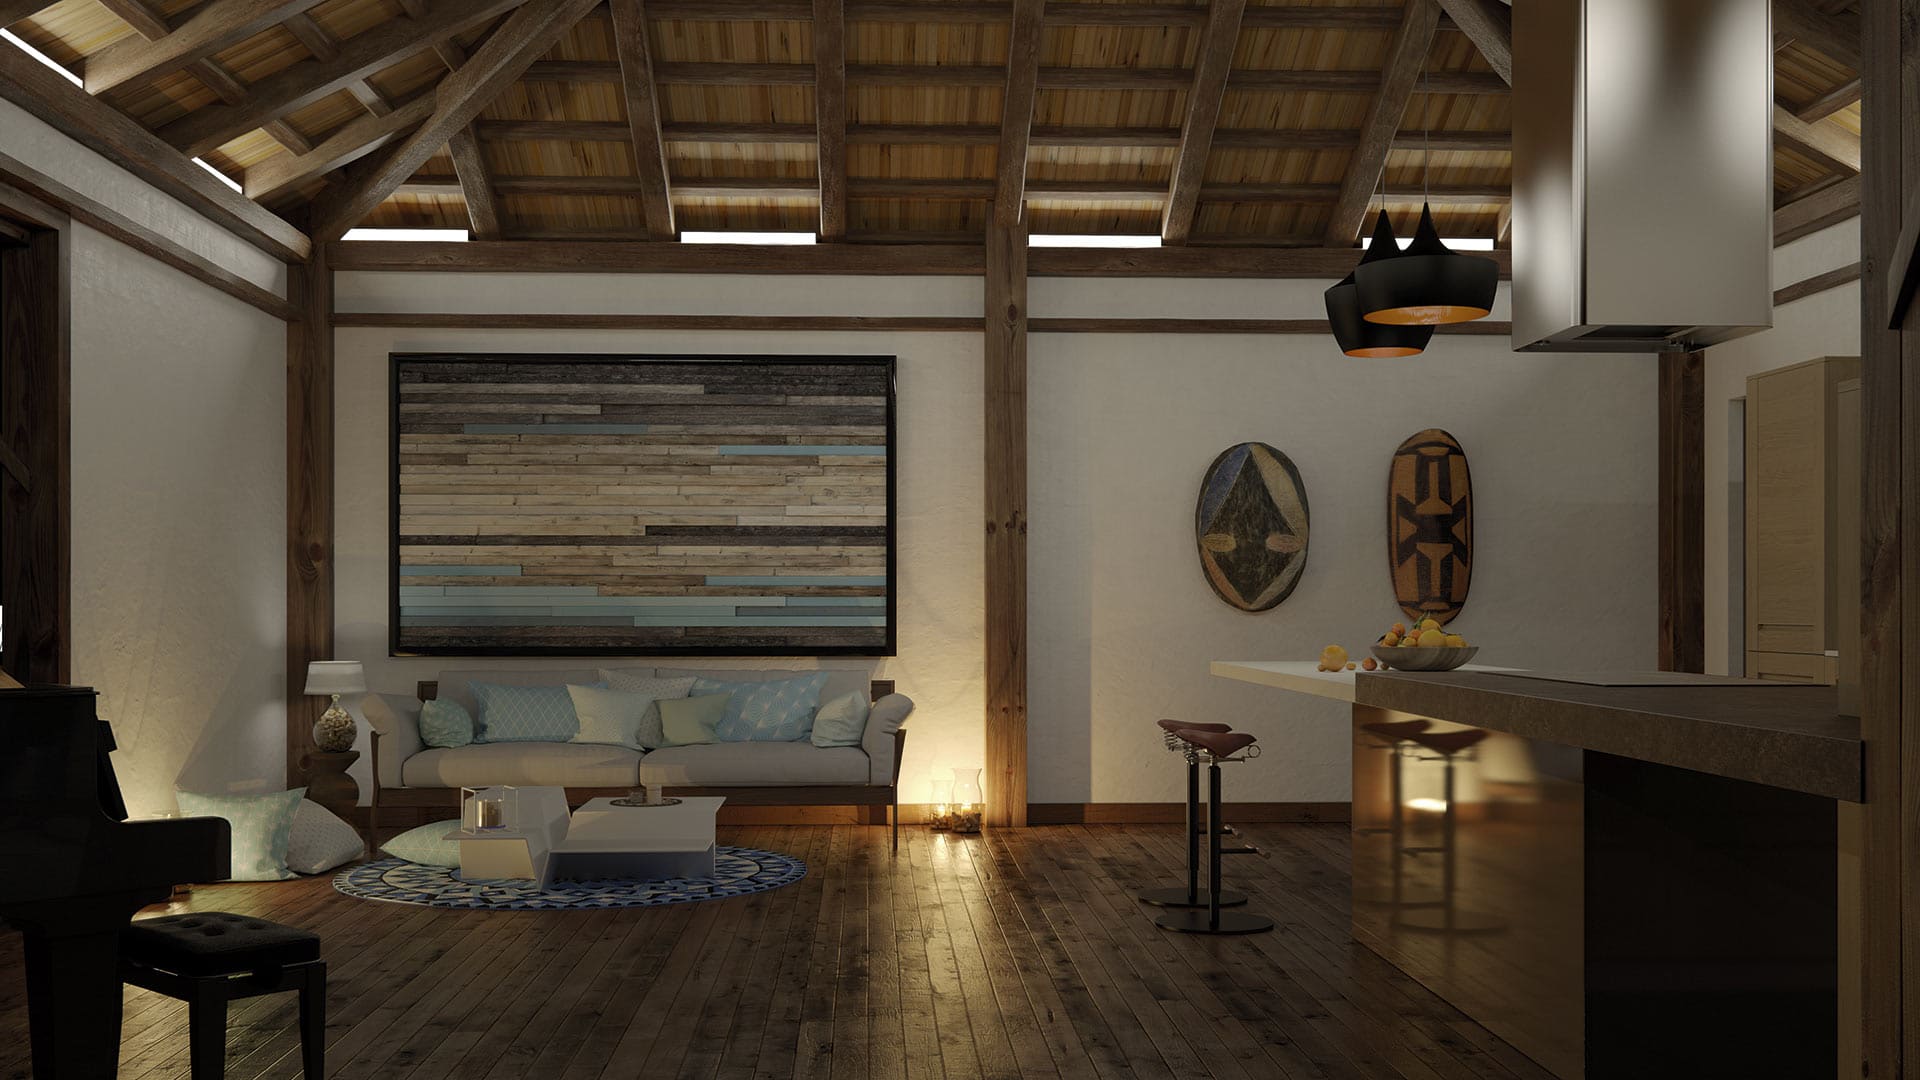 Sofisticado y acogedor salón comedor de estilo rústico con elementos en madera y una suave iluminación